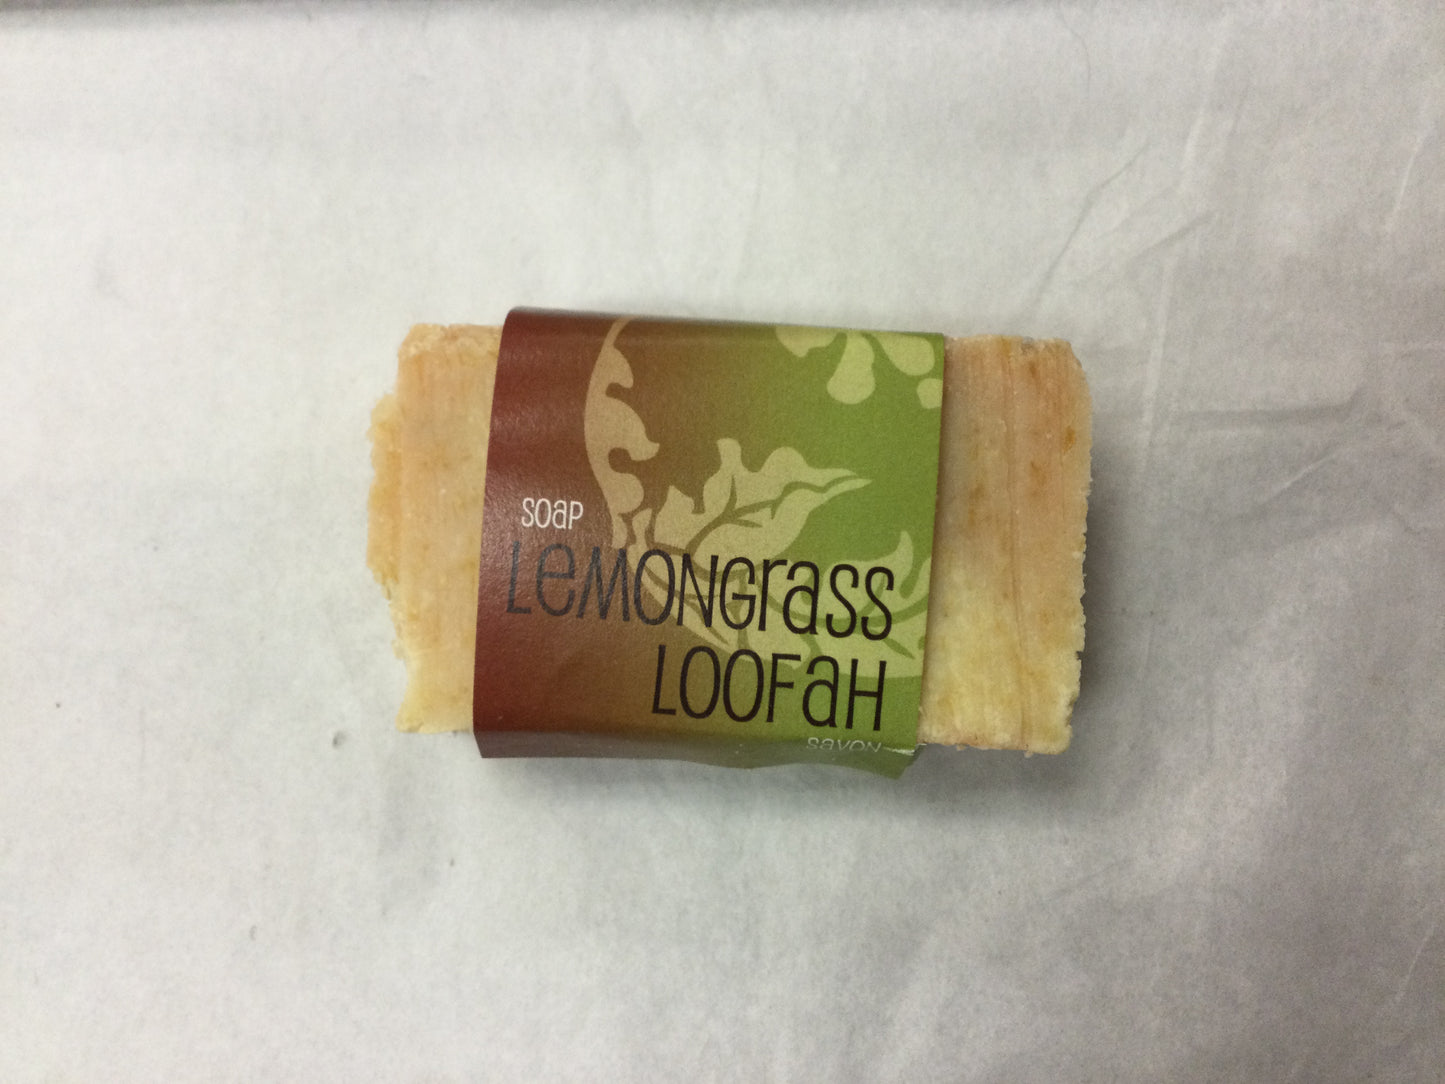 Lemongrass Loofah soap